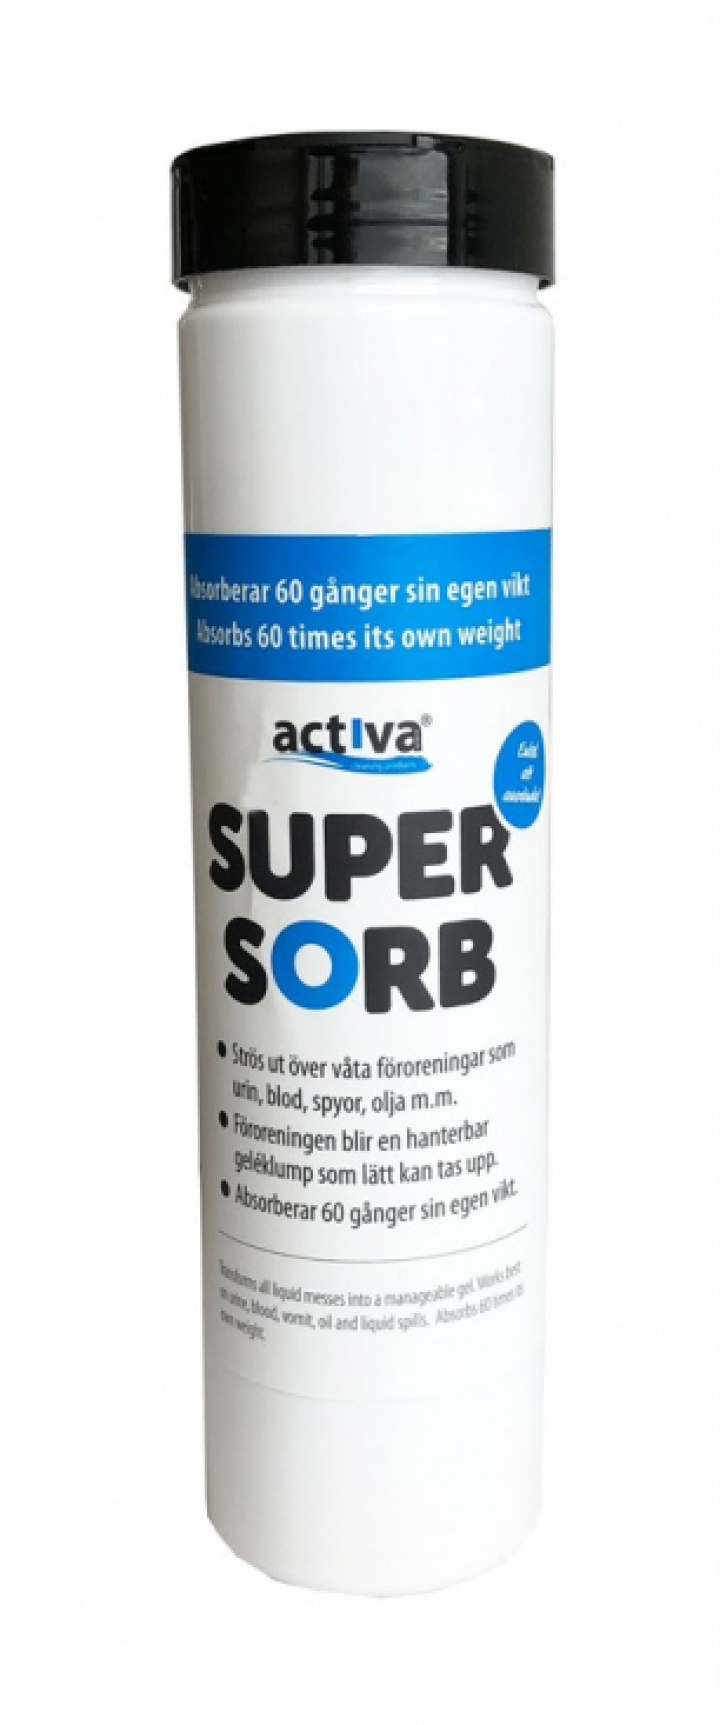 Activa SuperSorb i gruppen Stdutrustning / Stdkem & Golvvrd / Textil, rostfritt & vriga kem hos Stdbutiken (39028)